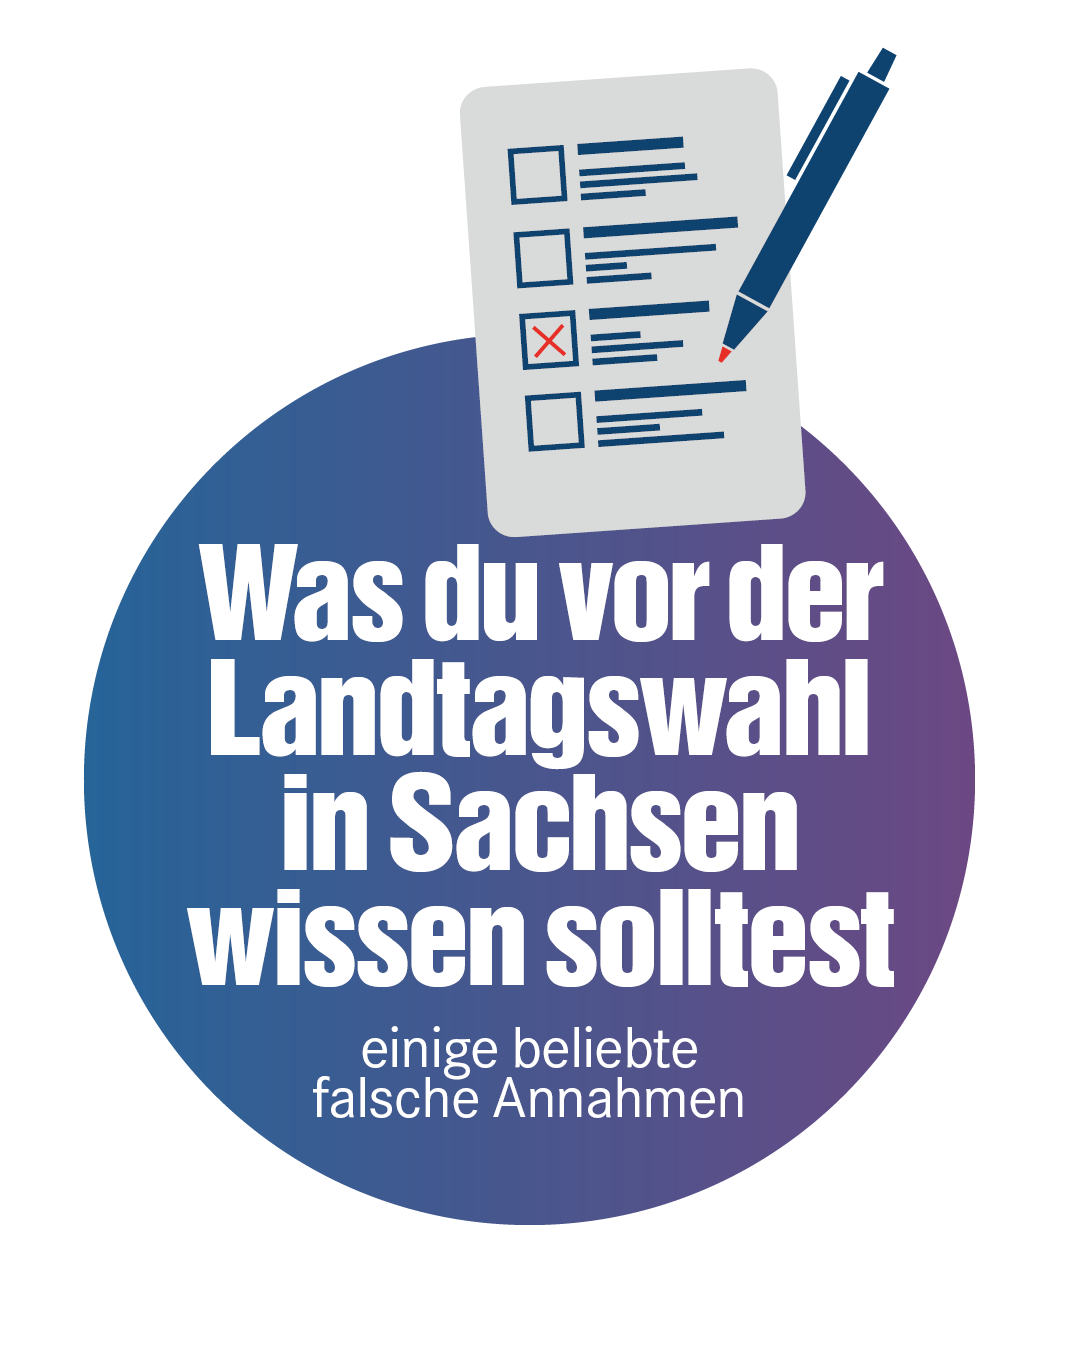 Text: „Was du vor der Landtagswahl in Sachsen wissen solltest“